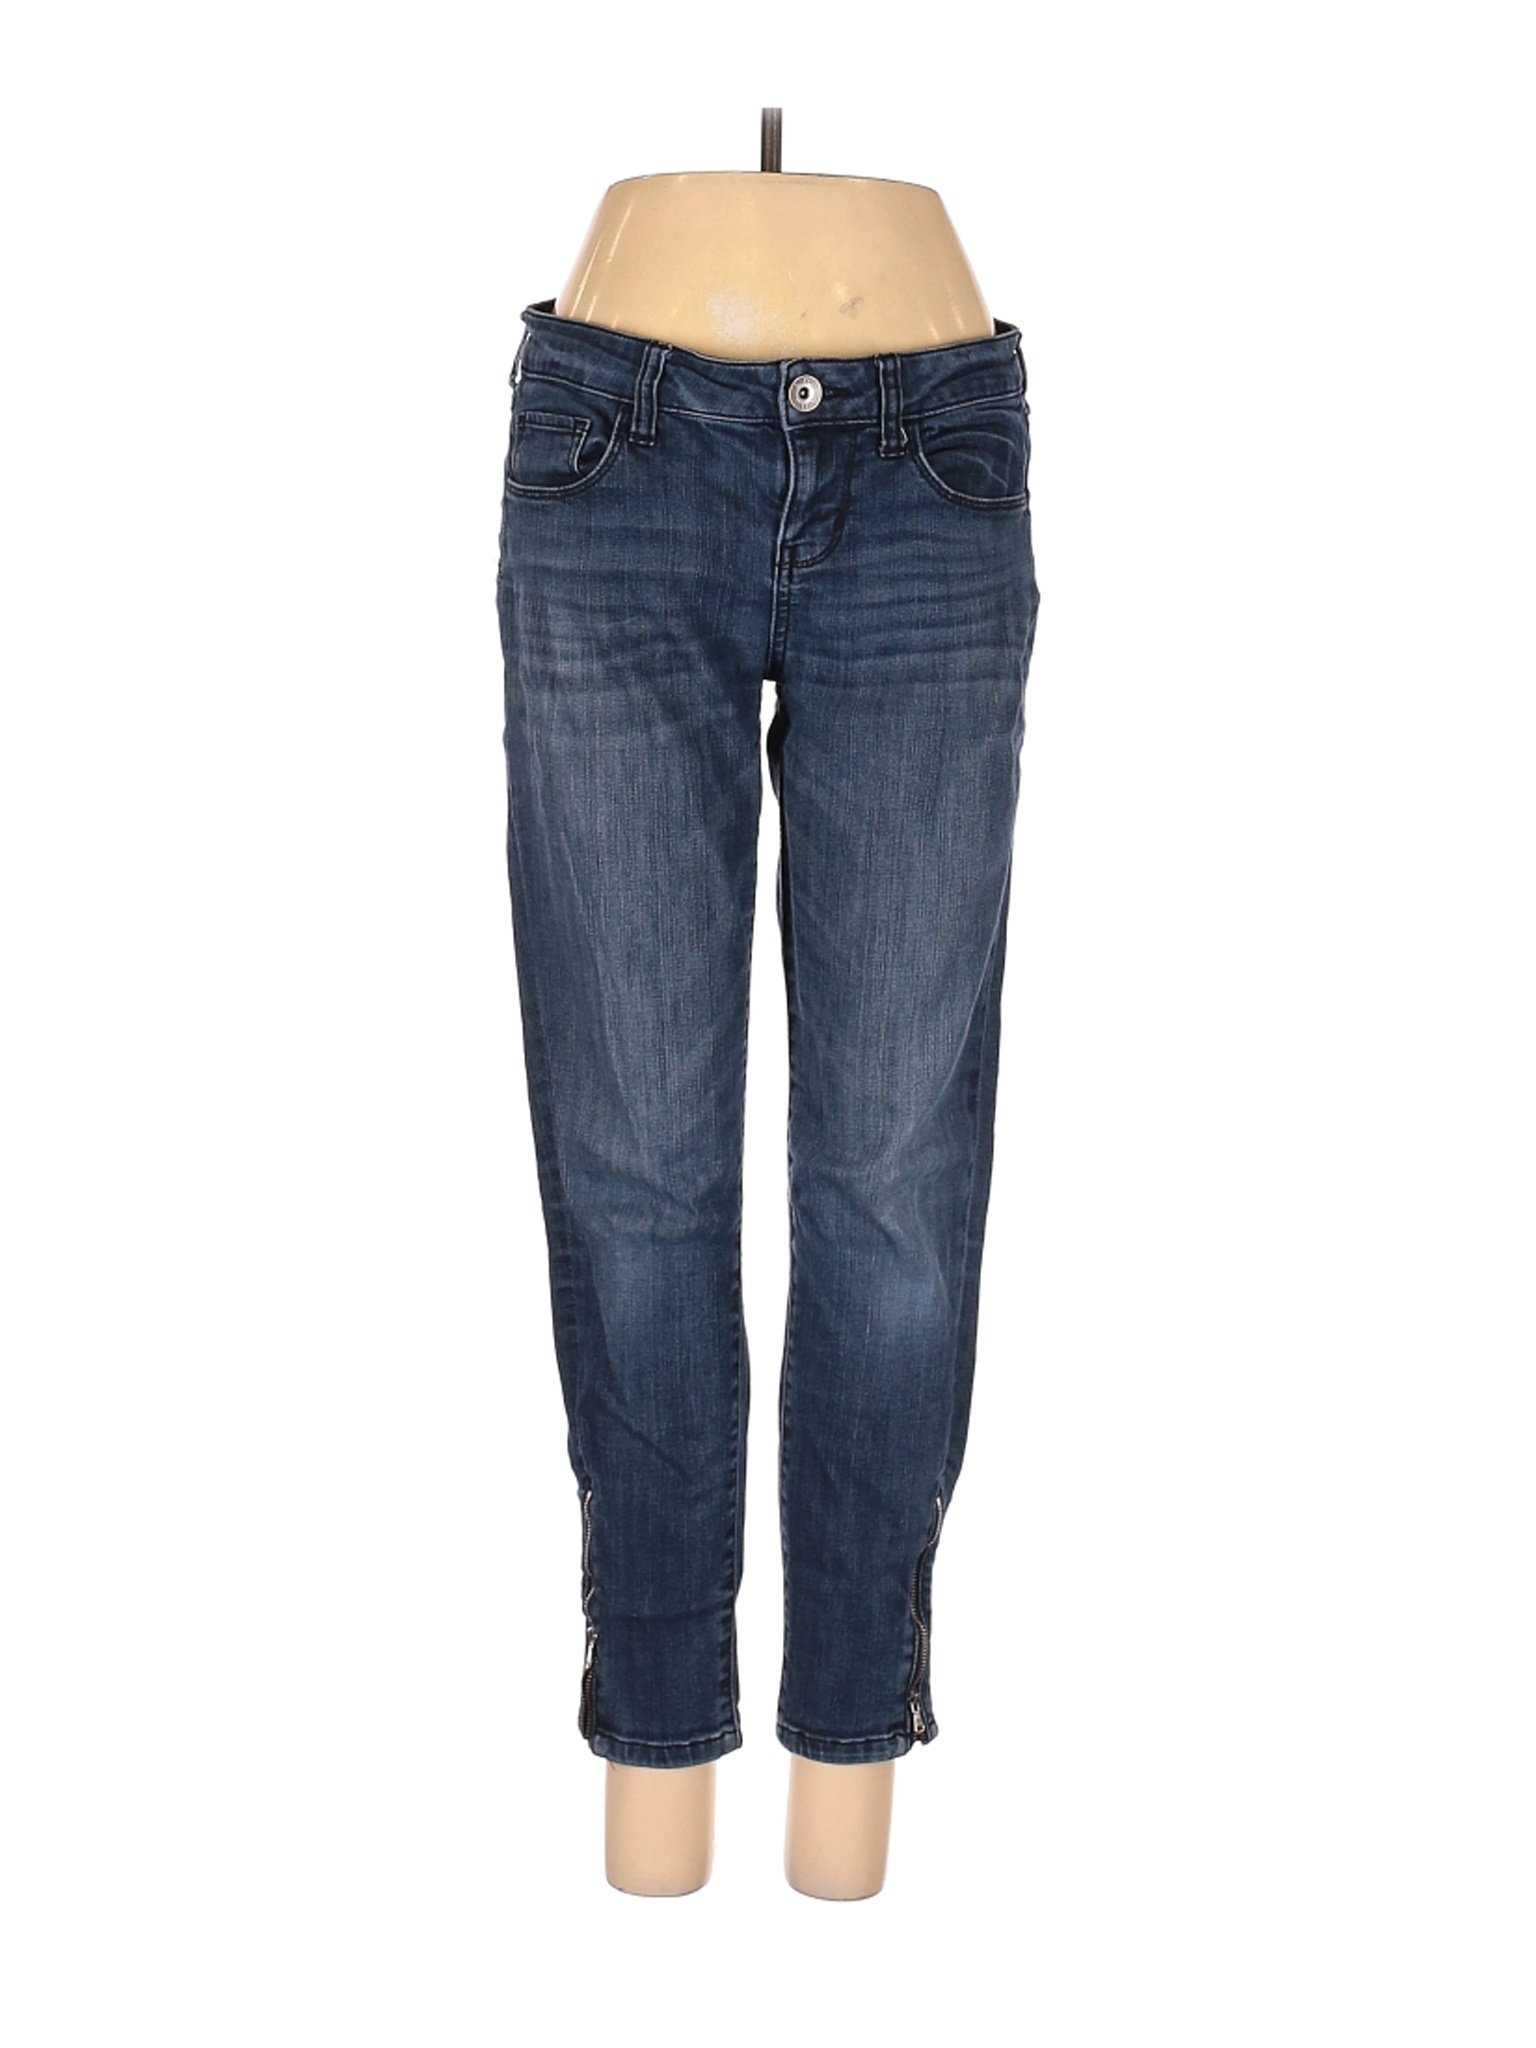 A.n.a. A New Approach Women Blue Jeans 27W | eBay